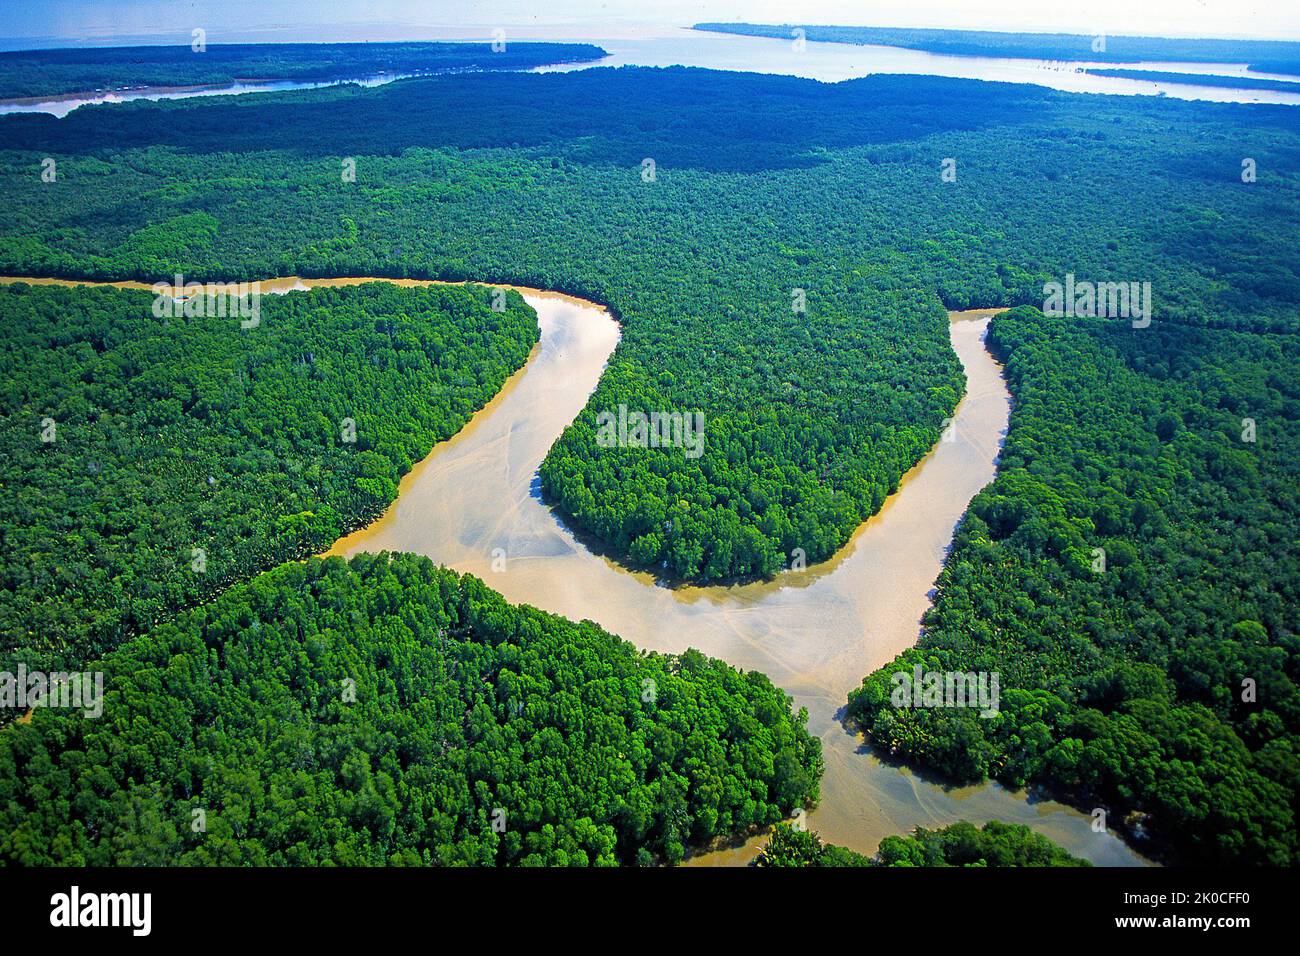 River at rain forest, Kalimatan, Borneo, Malaysia, Asia Stock Photo